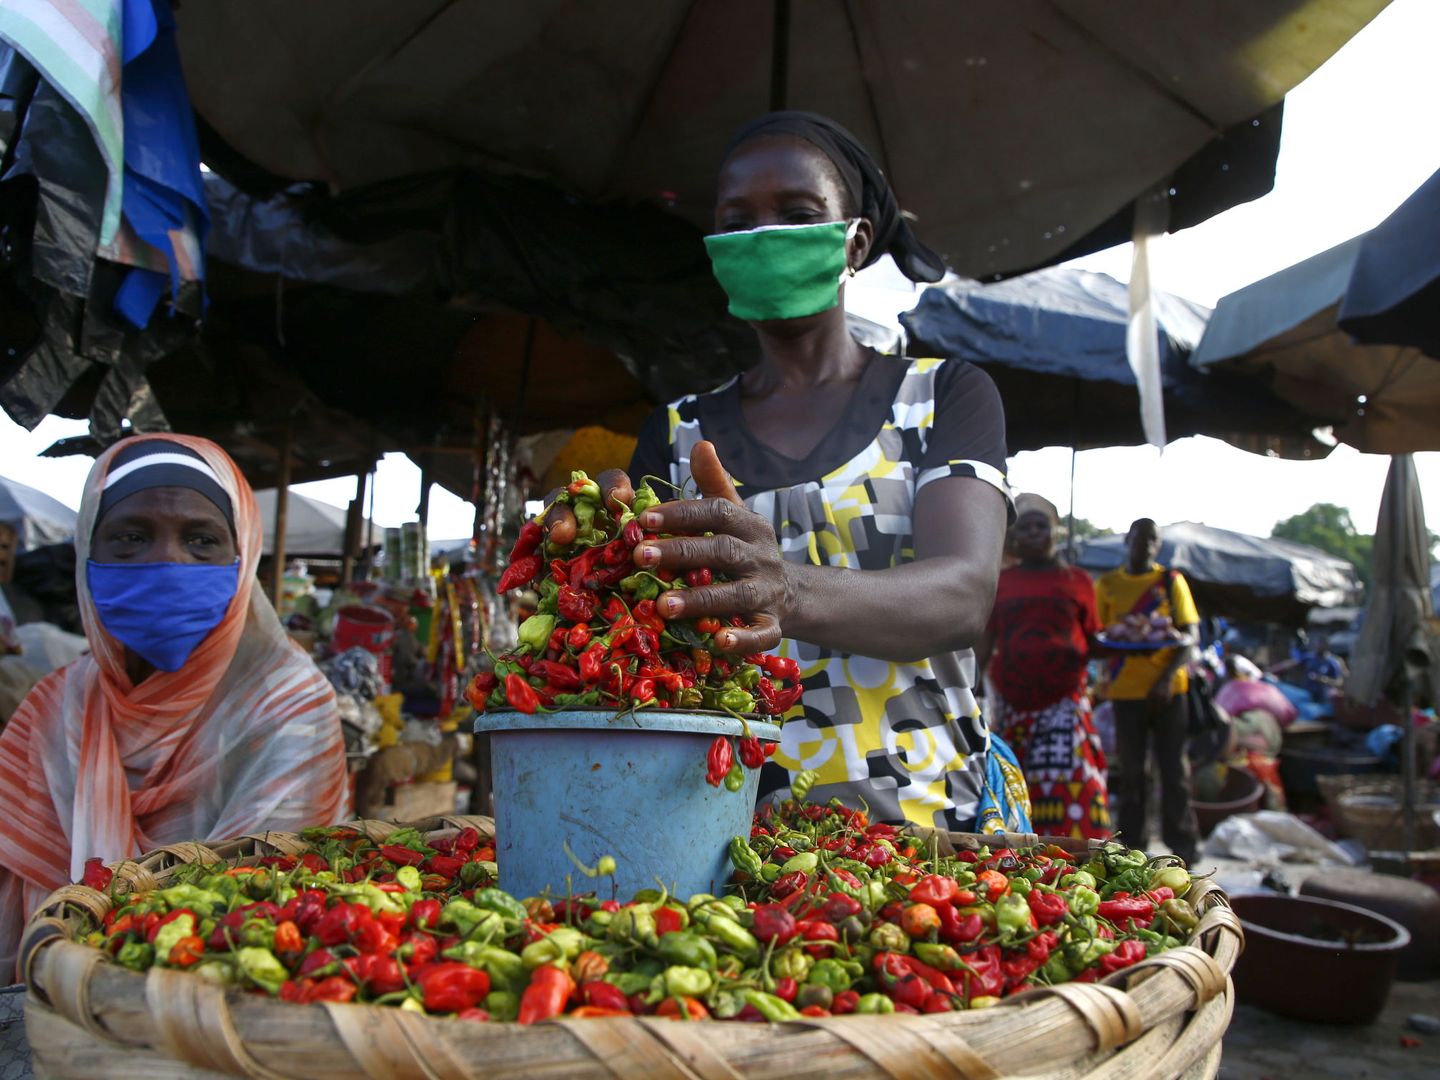 Una mujer con mascarilla en un mercado de Costa de Marfil. (Reuters)